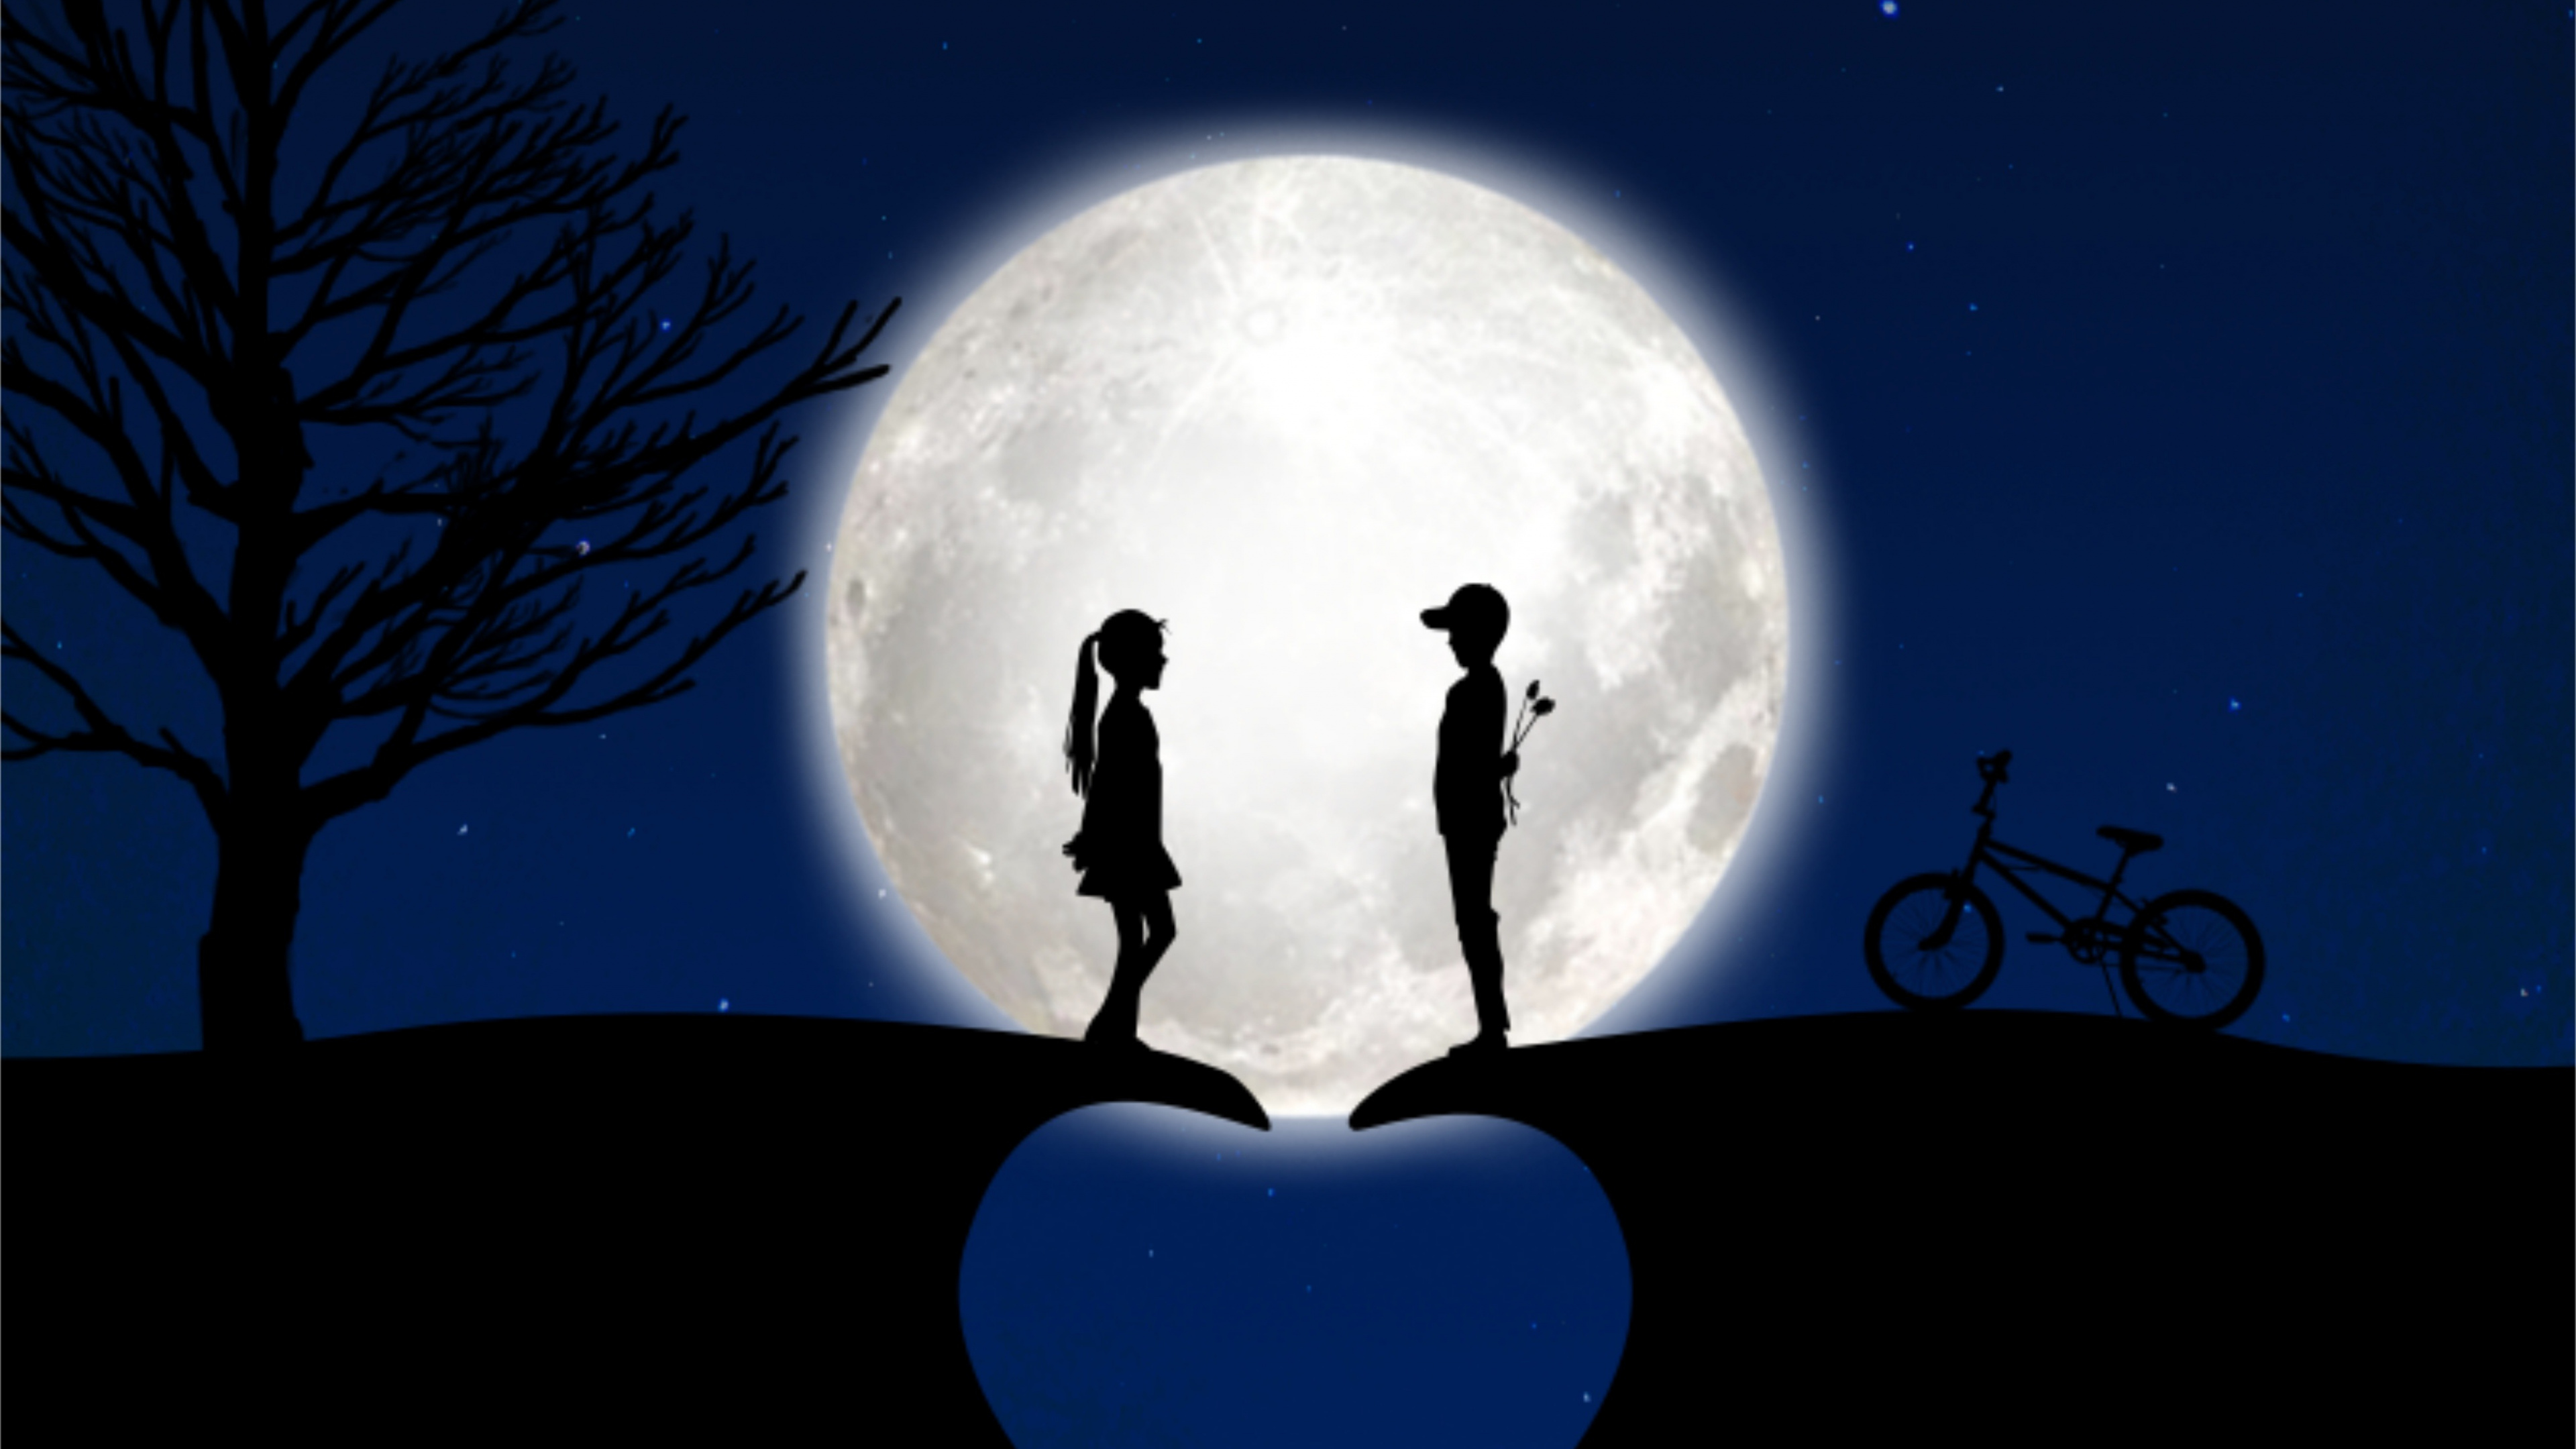 Mond, Licht, Mondlicht, Atmosphäre, Nacht. Wallpaper in 3840x2160 Resolution